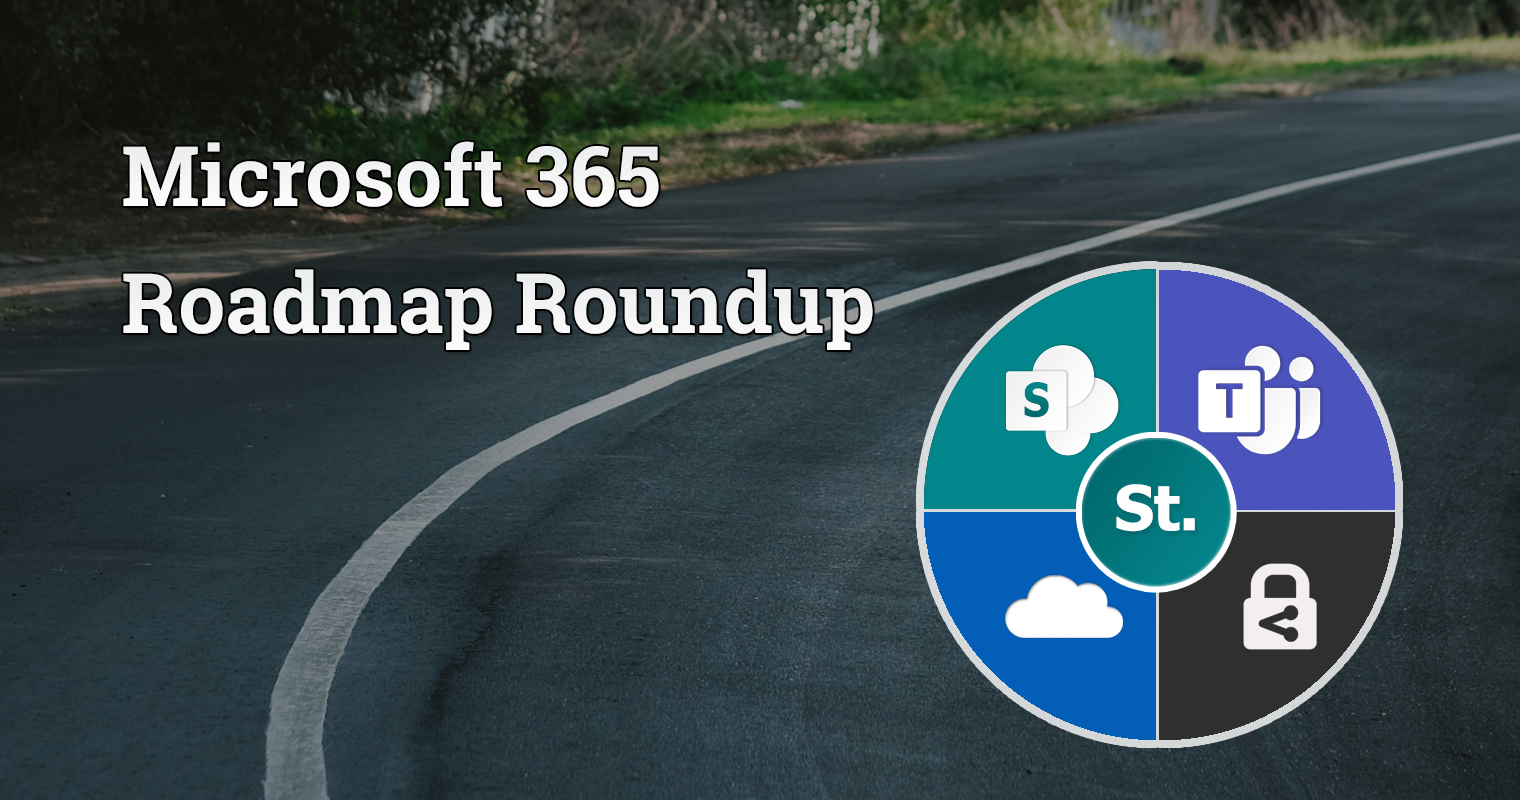 Microsoft 365 roadmap roundup – 31 May 2021